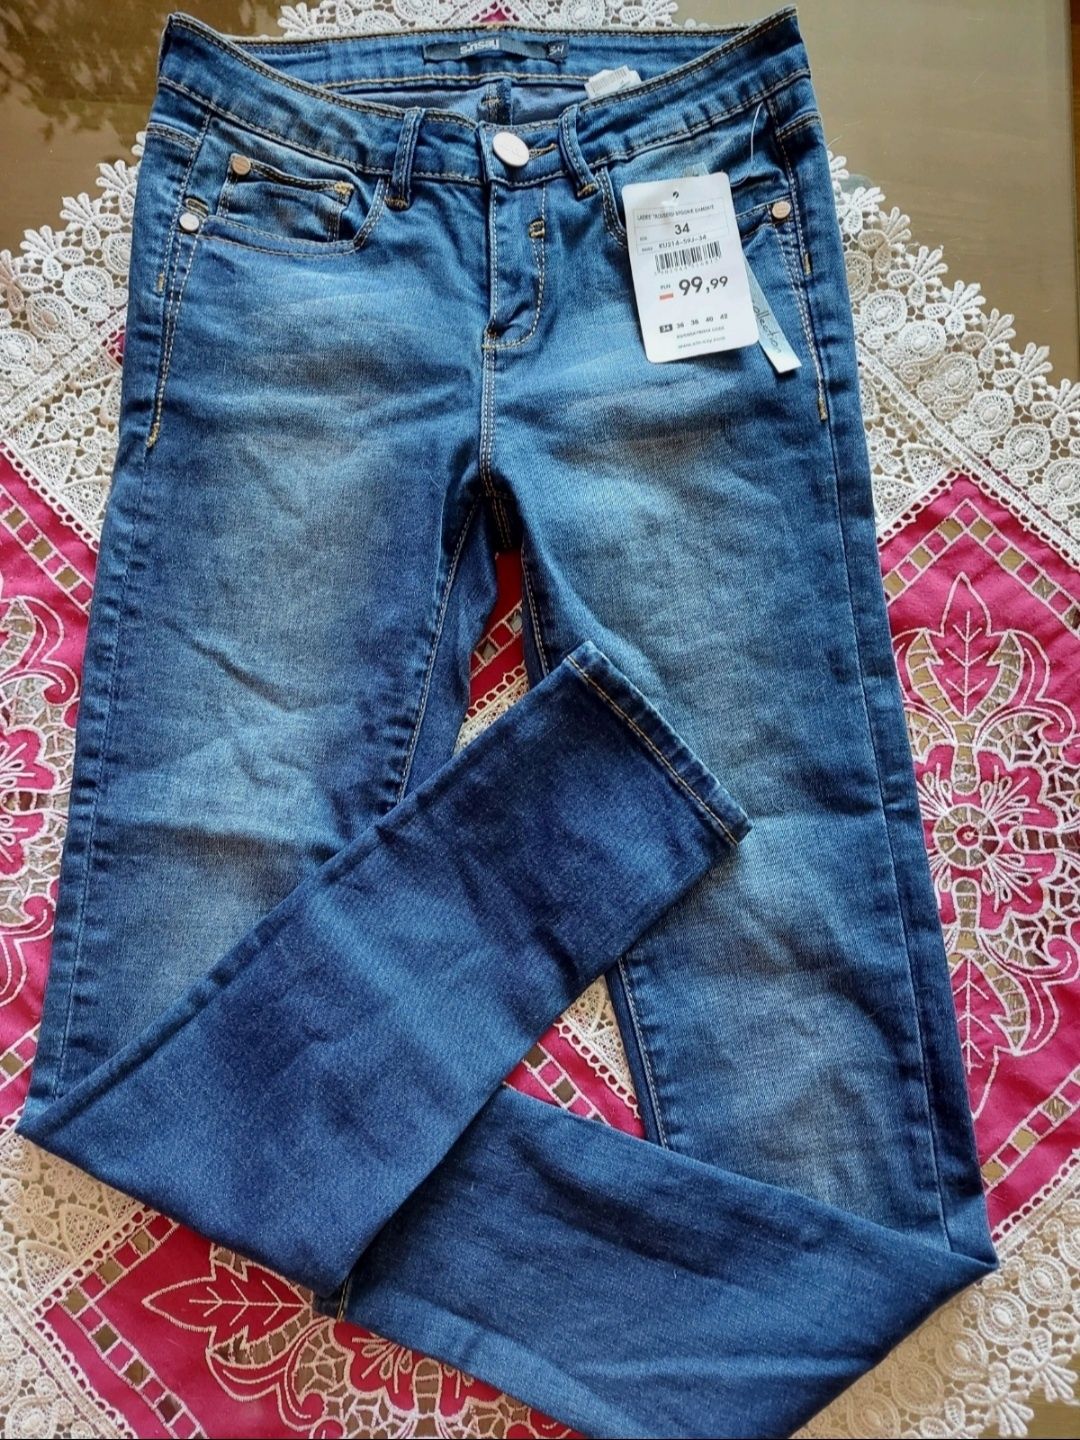 Jeans nowe z metką